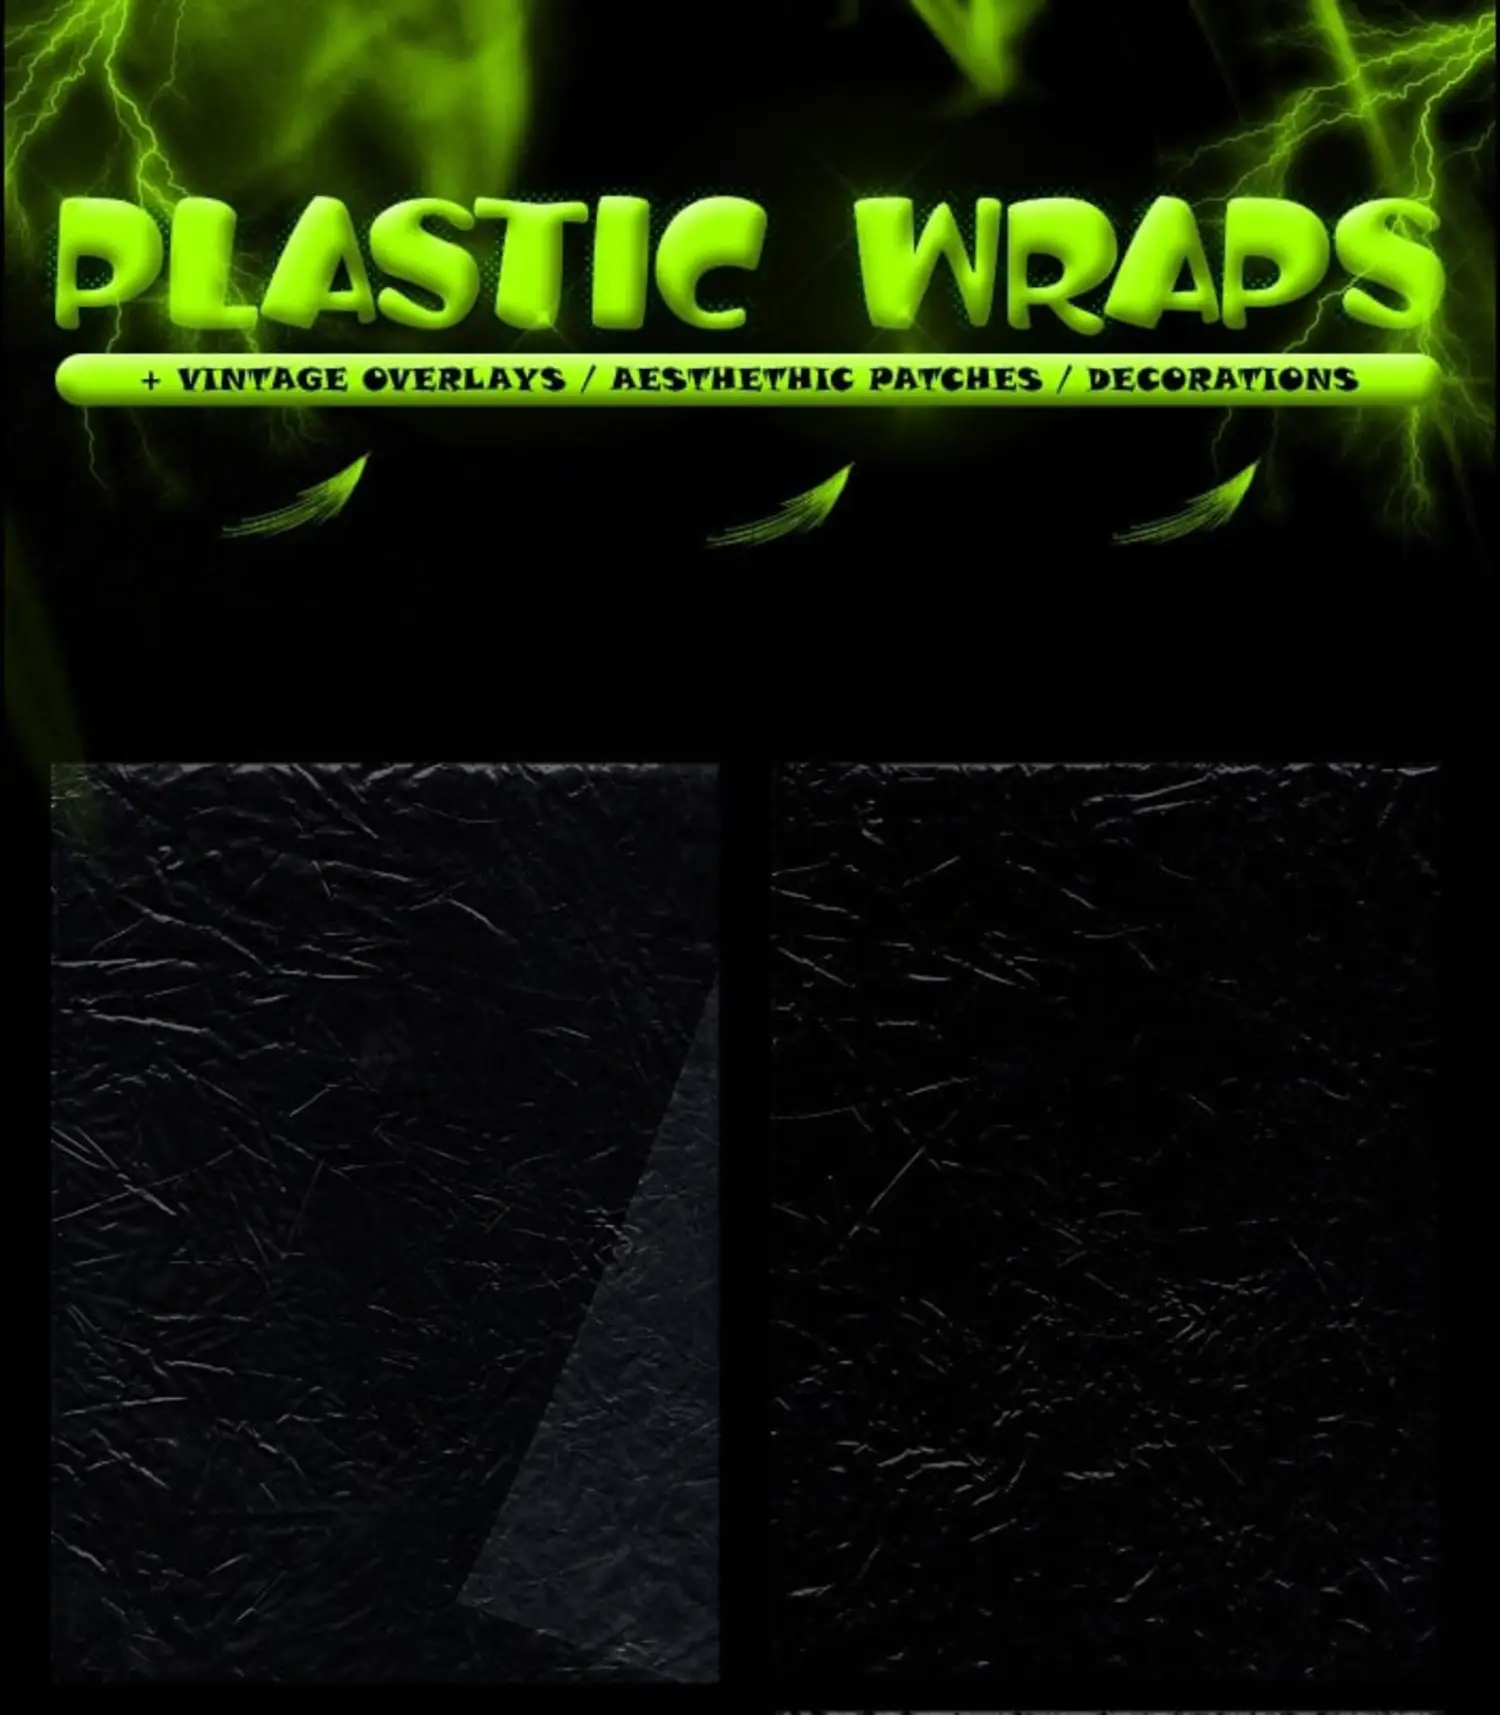 1930 复古贴纸炫彩背景透明保鲜膜素材包 PLASTIC WRAPS + OVERLAYS ETC